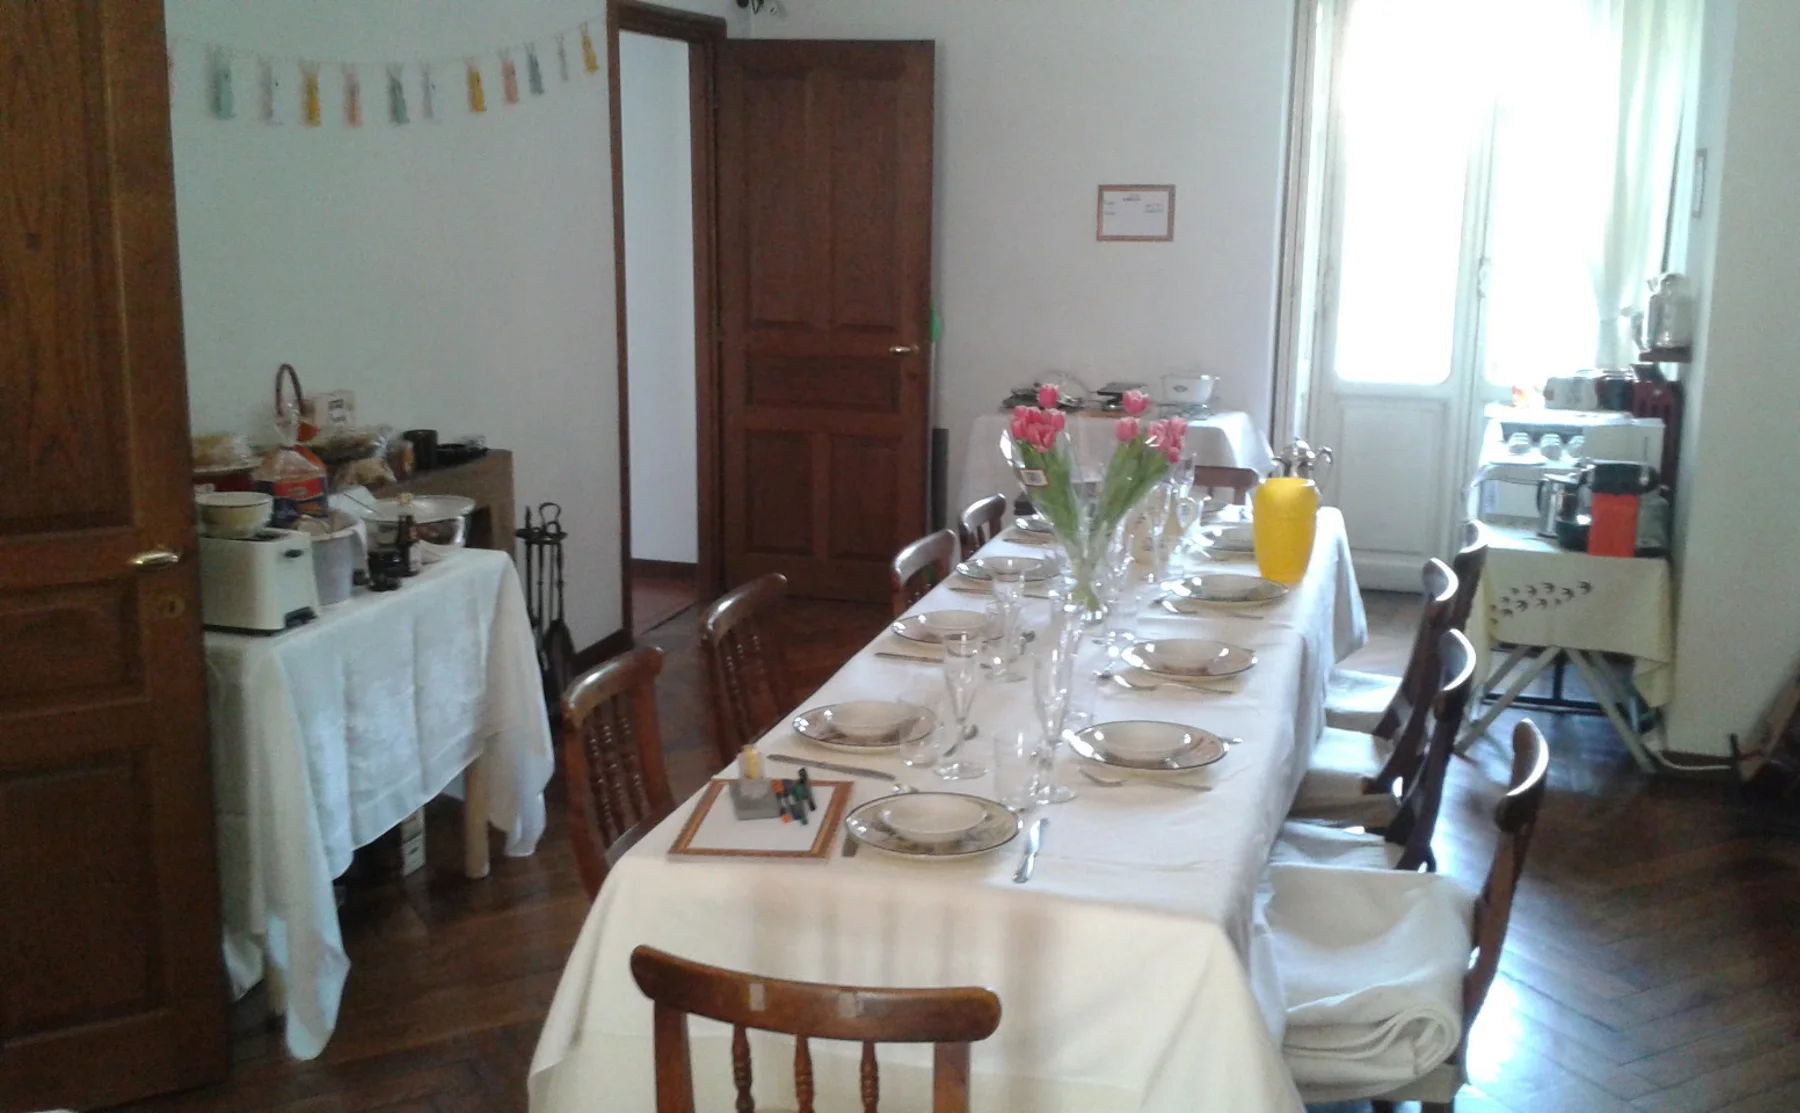 Gluten free Piedmontese dinner in the heart of Turin - 1001613